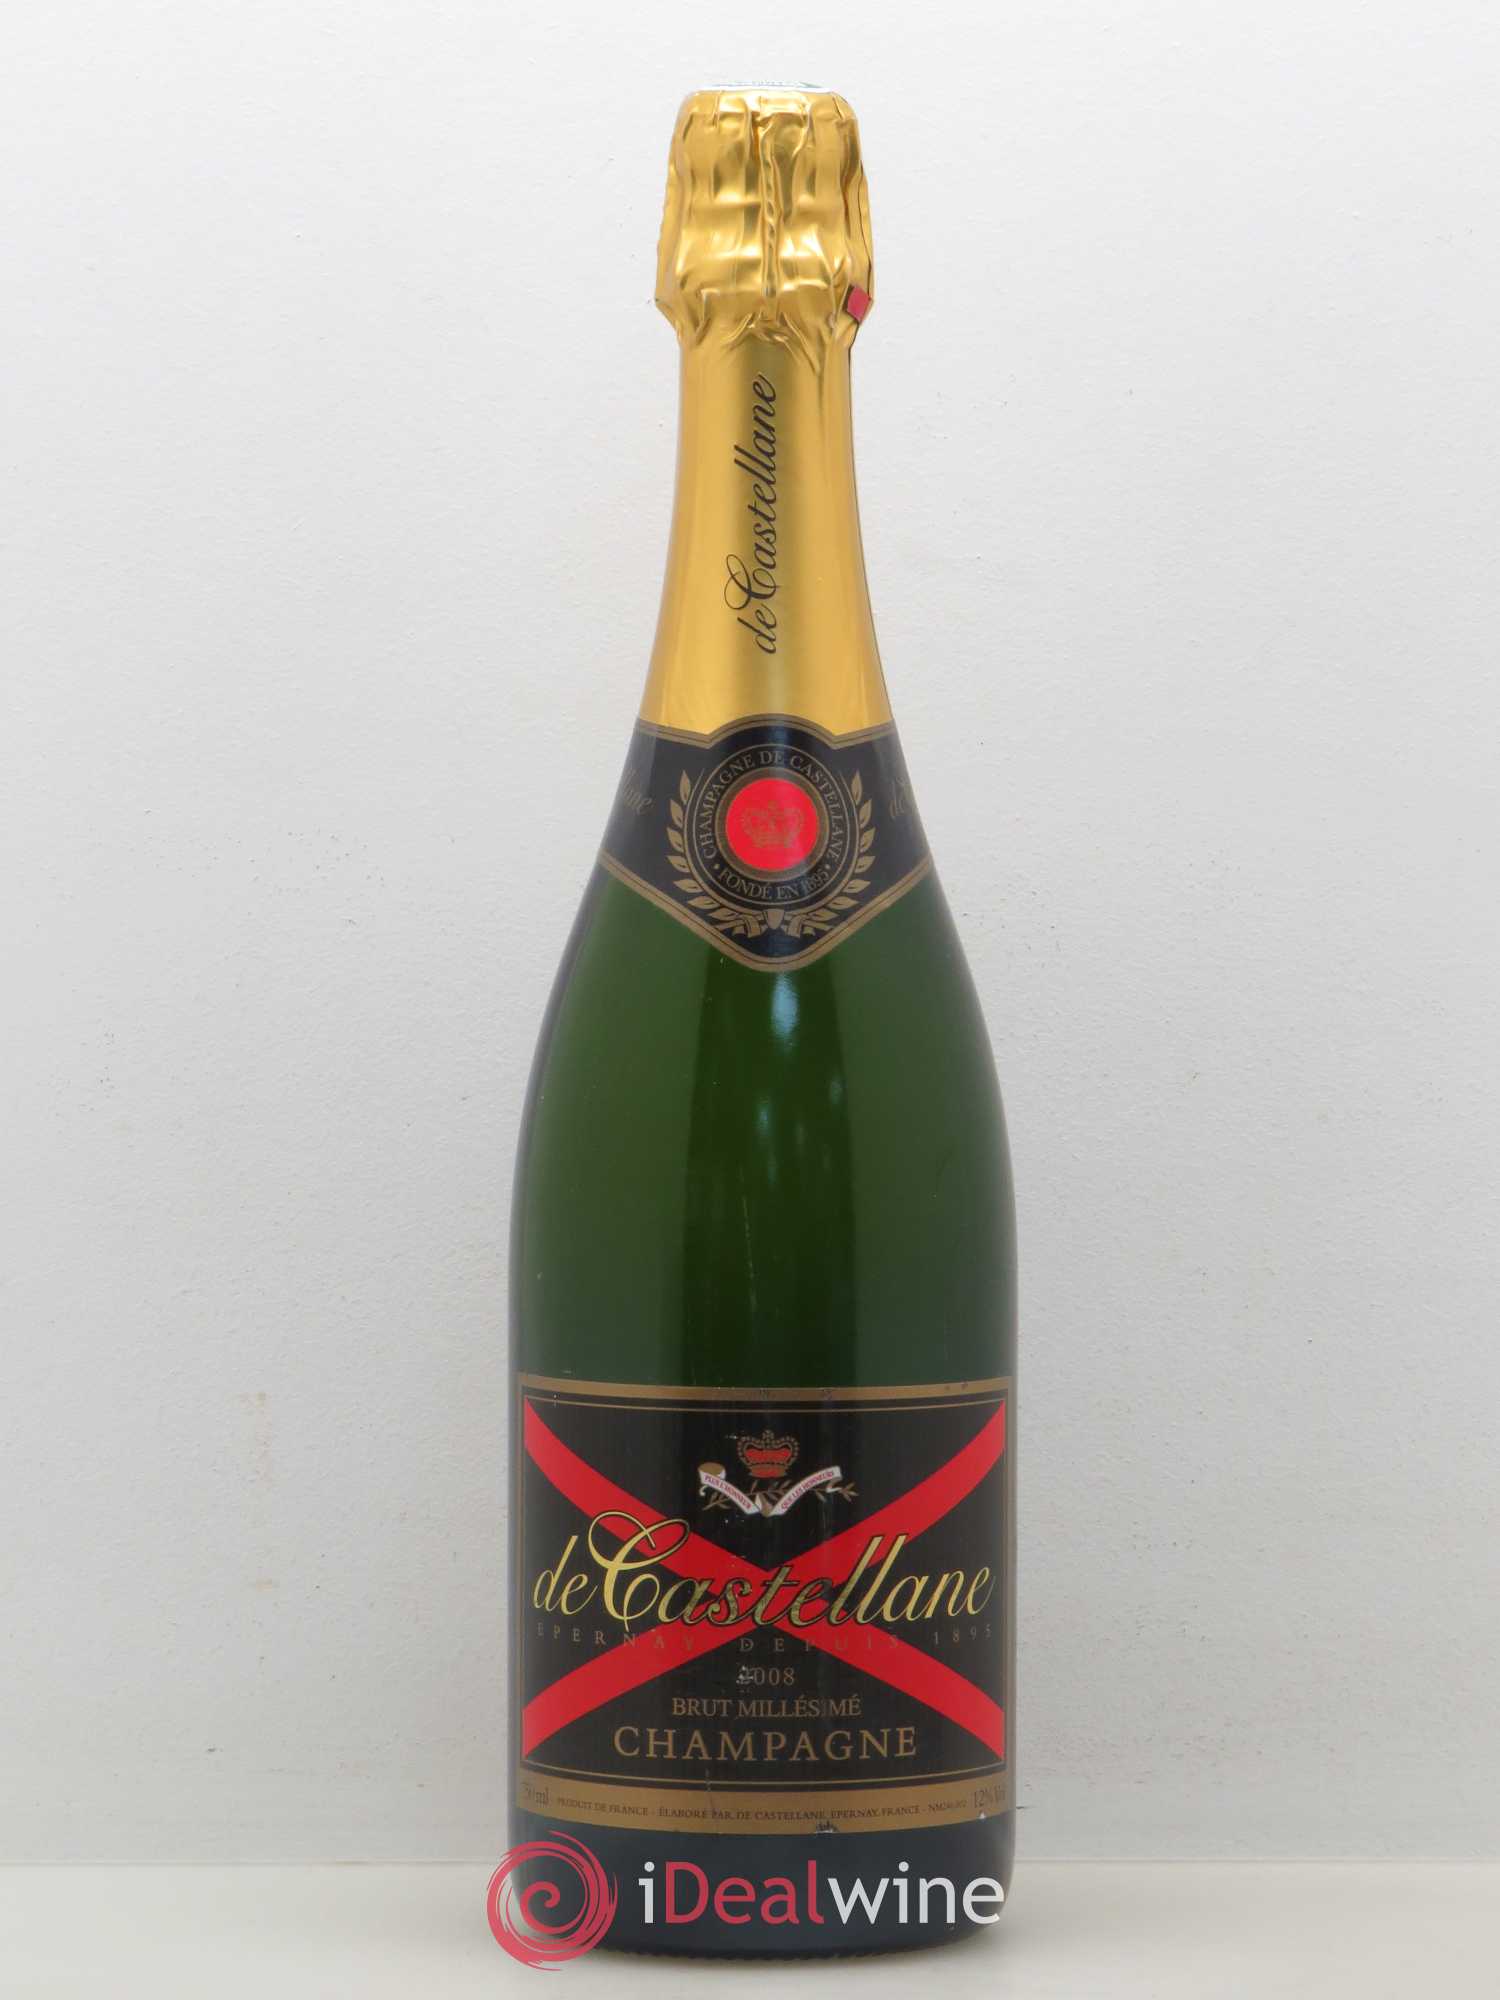 Capsule de champagne nouvelle de castellane N° 92i